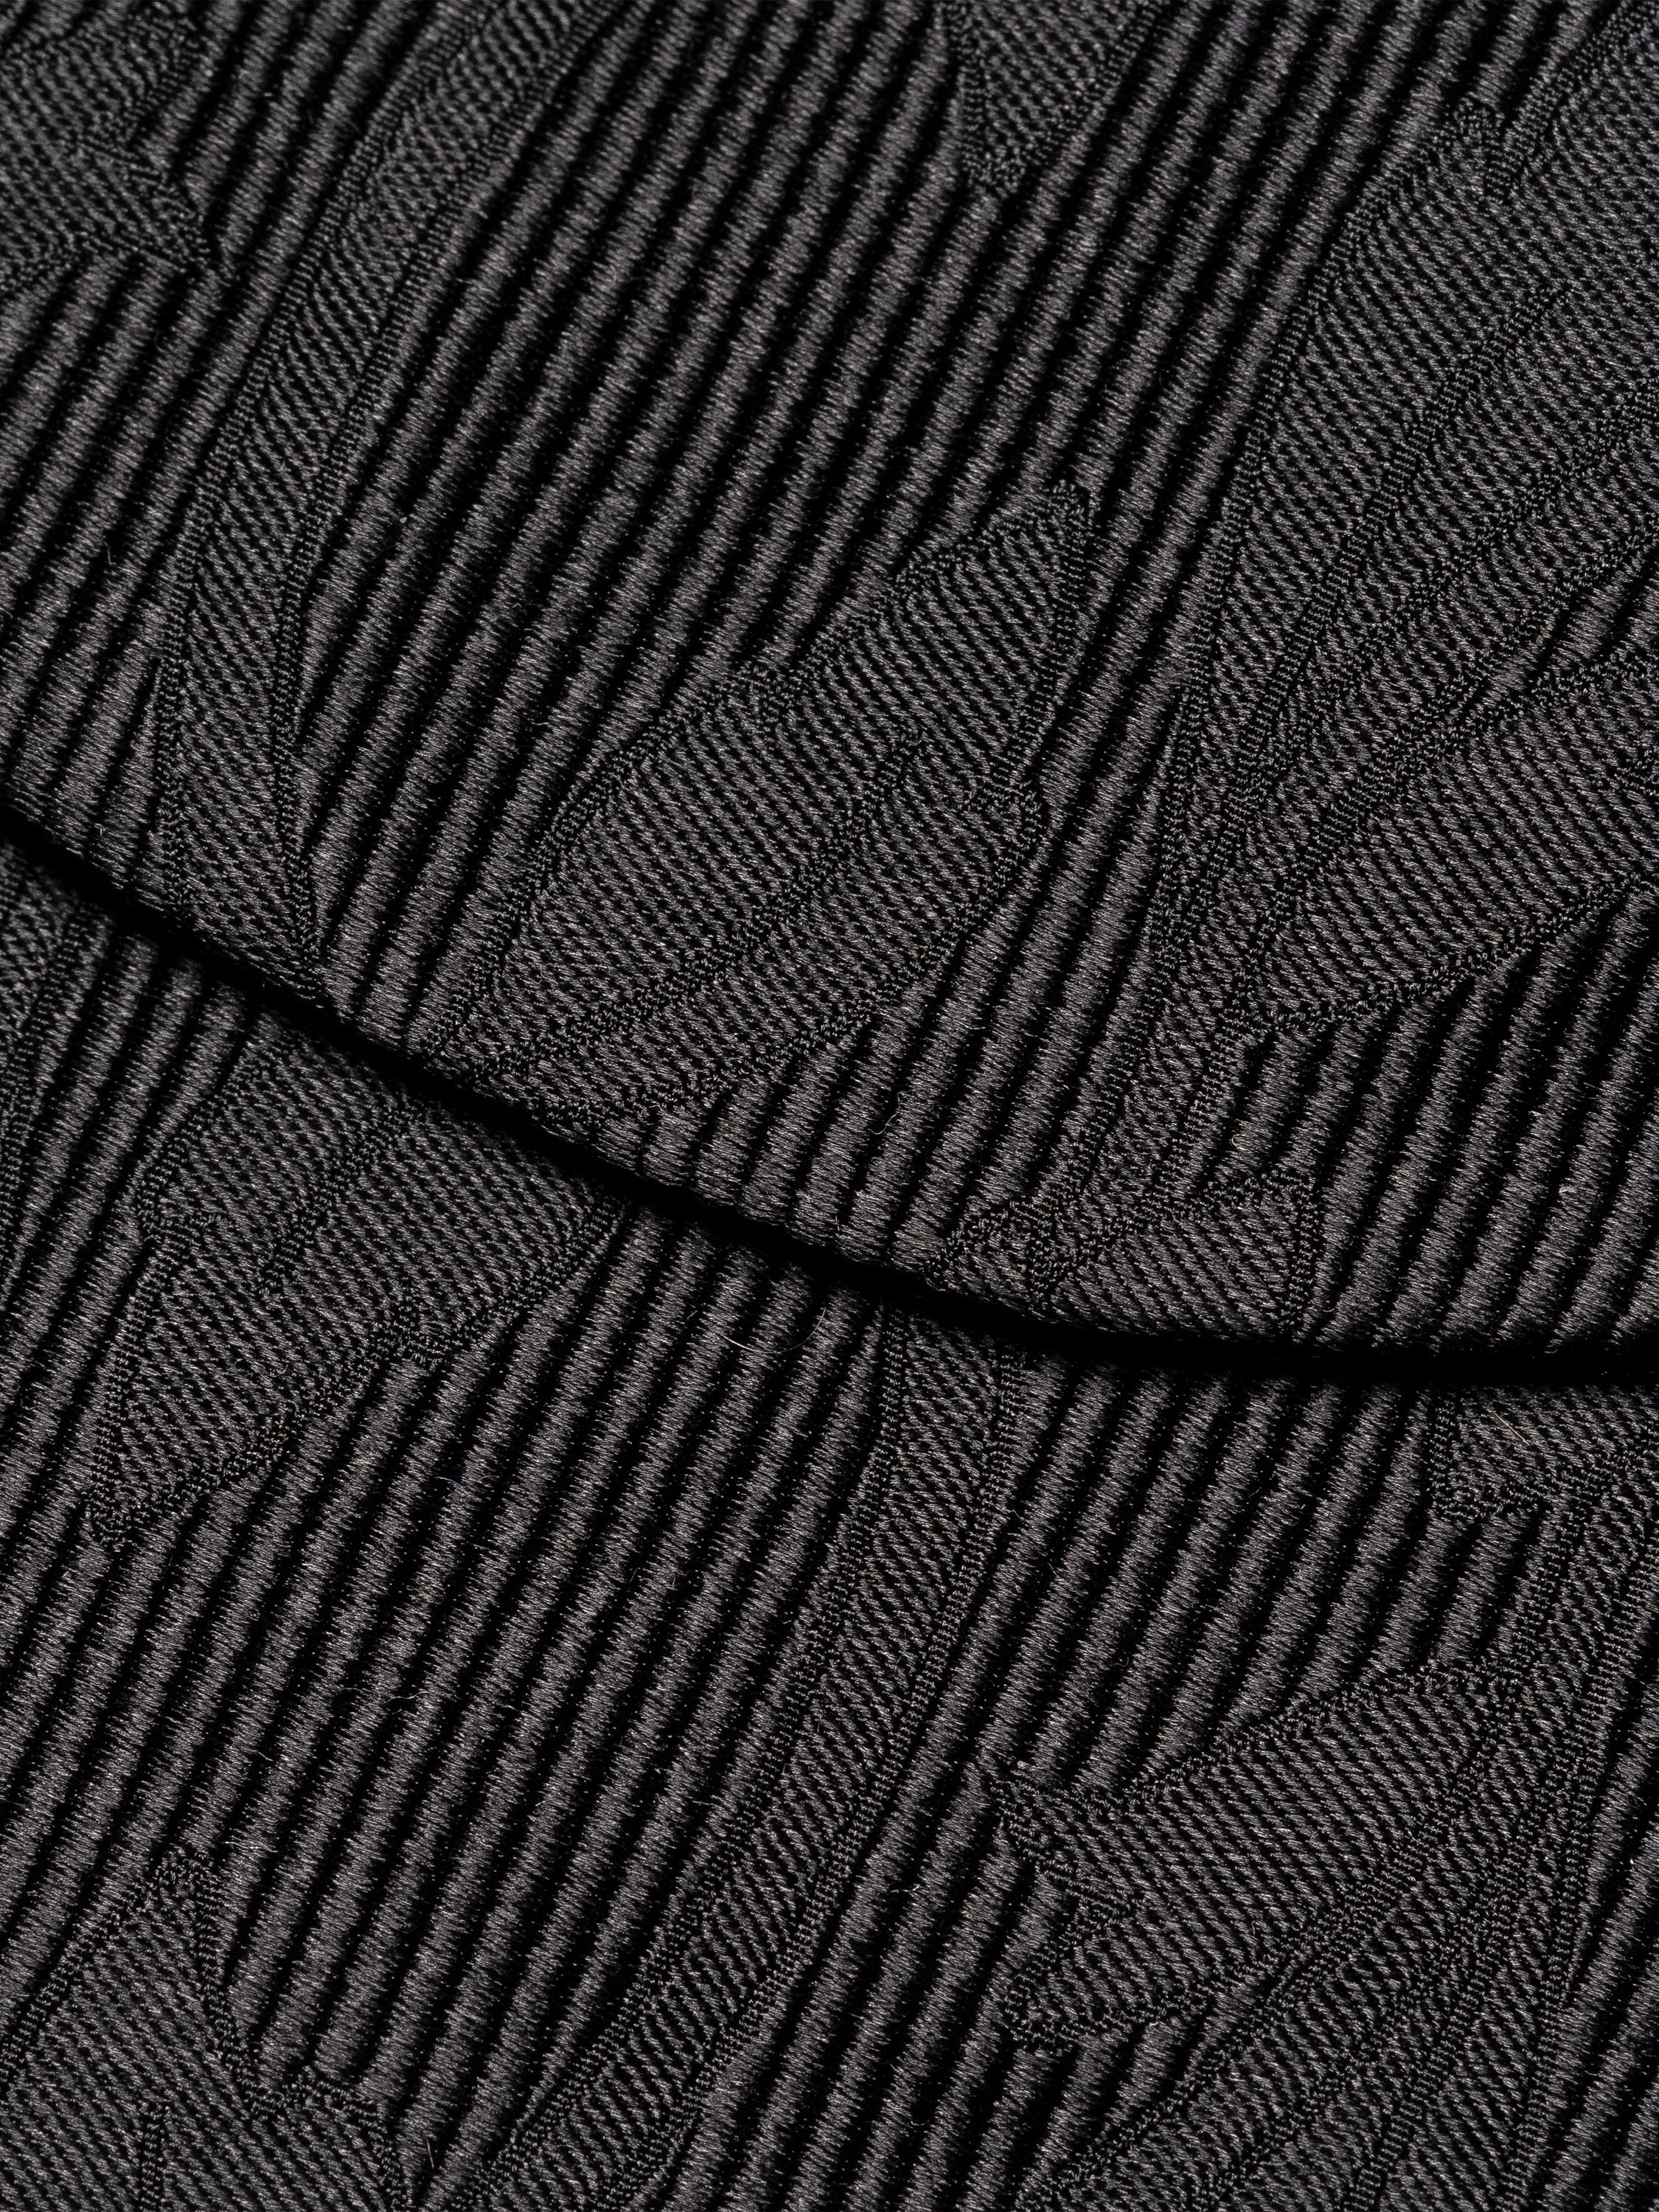 ETON - Black Jacquard Silk Bow Tie - Self-Tied 10001051918